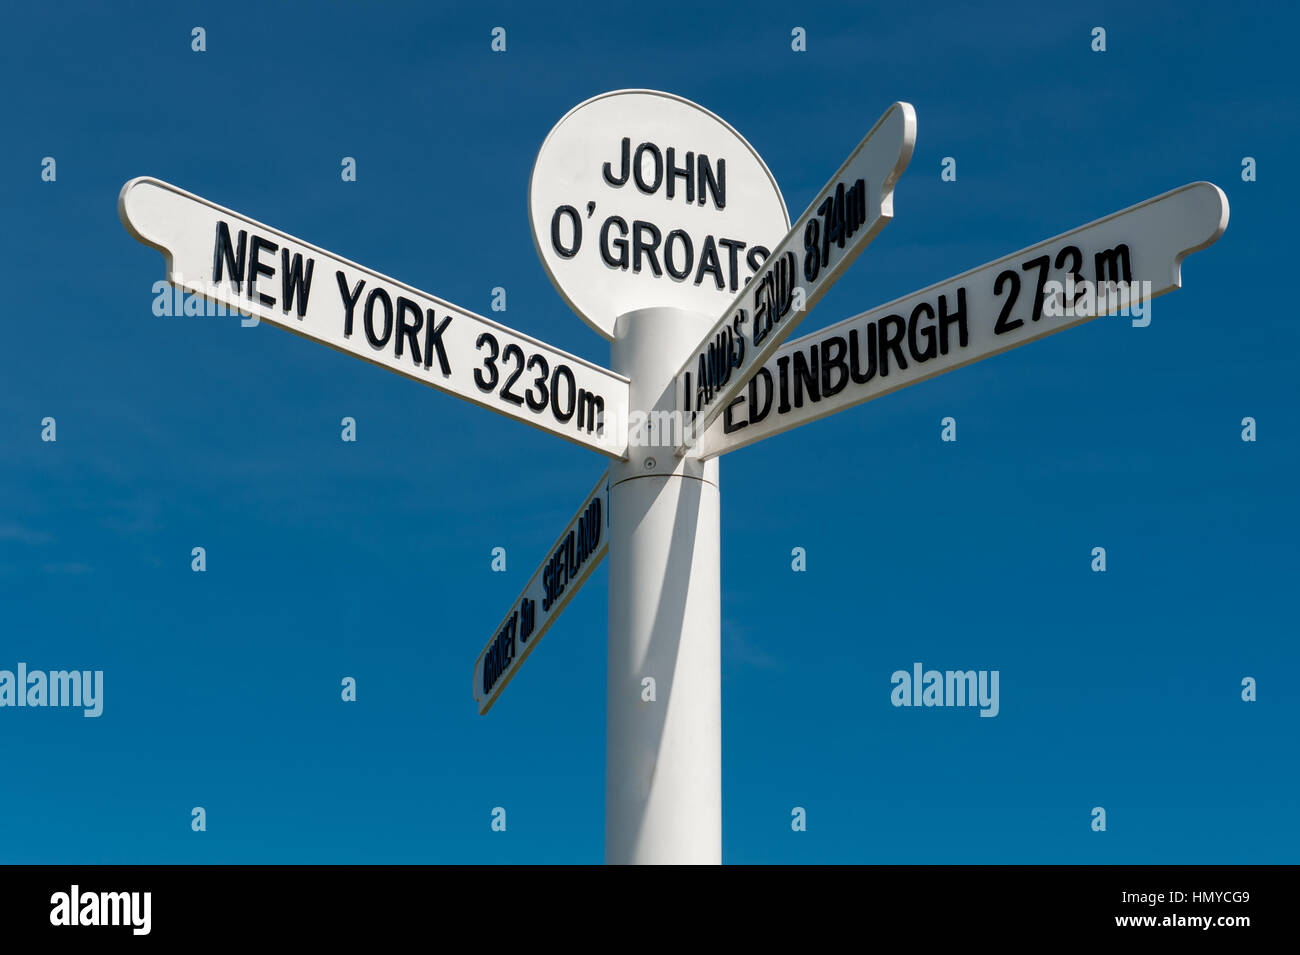 Le milepost signe à John O Groats près de Caithness en Ecosse sur l'endroit le plus au nord est de l'Angleterre. Banque D'Images